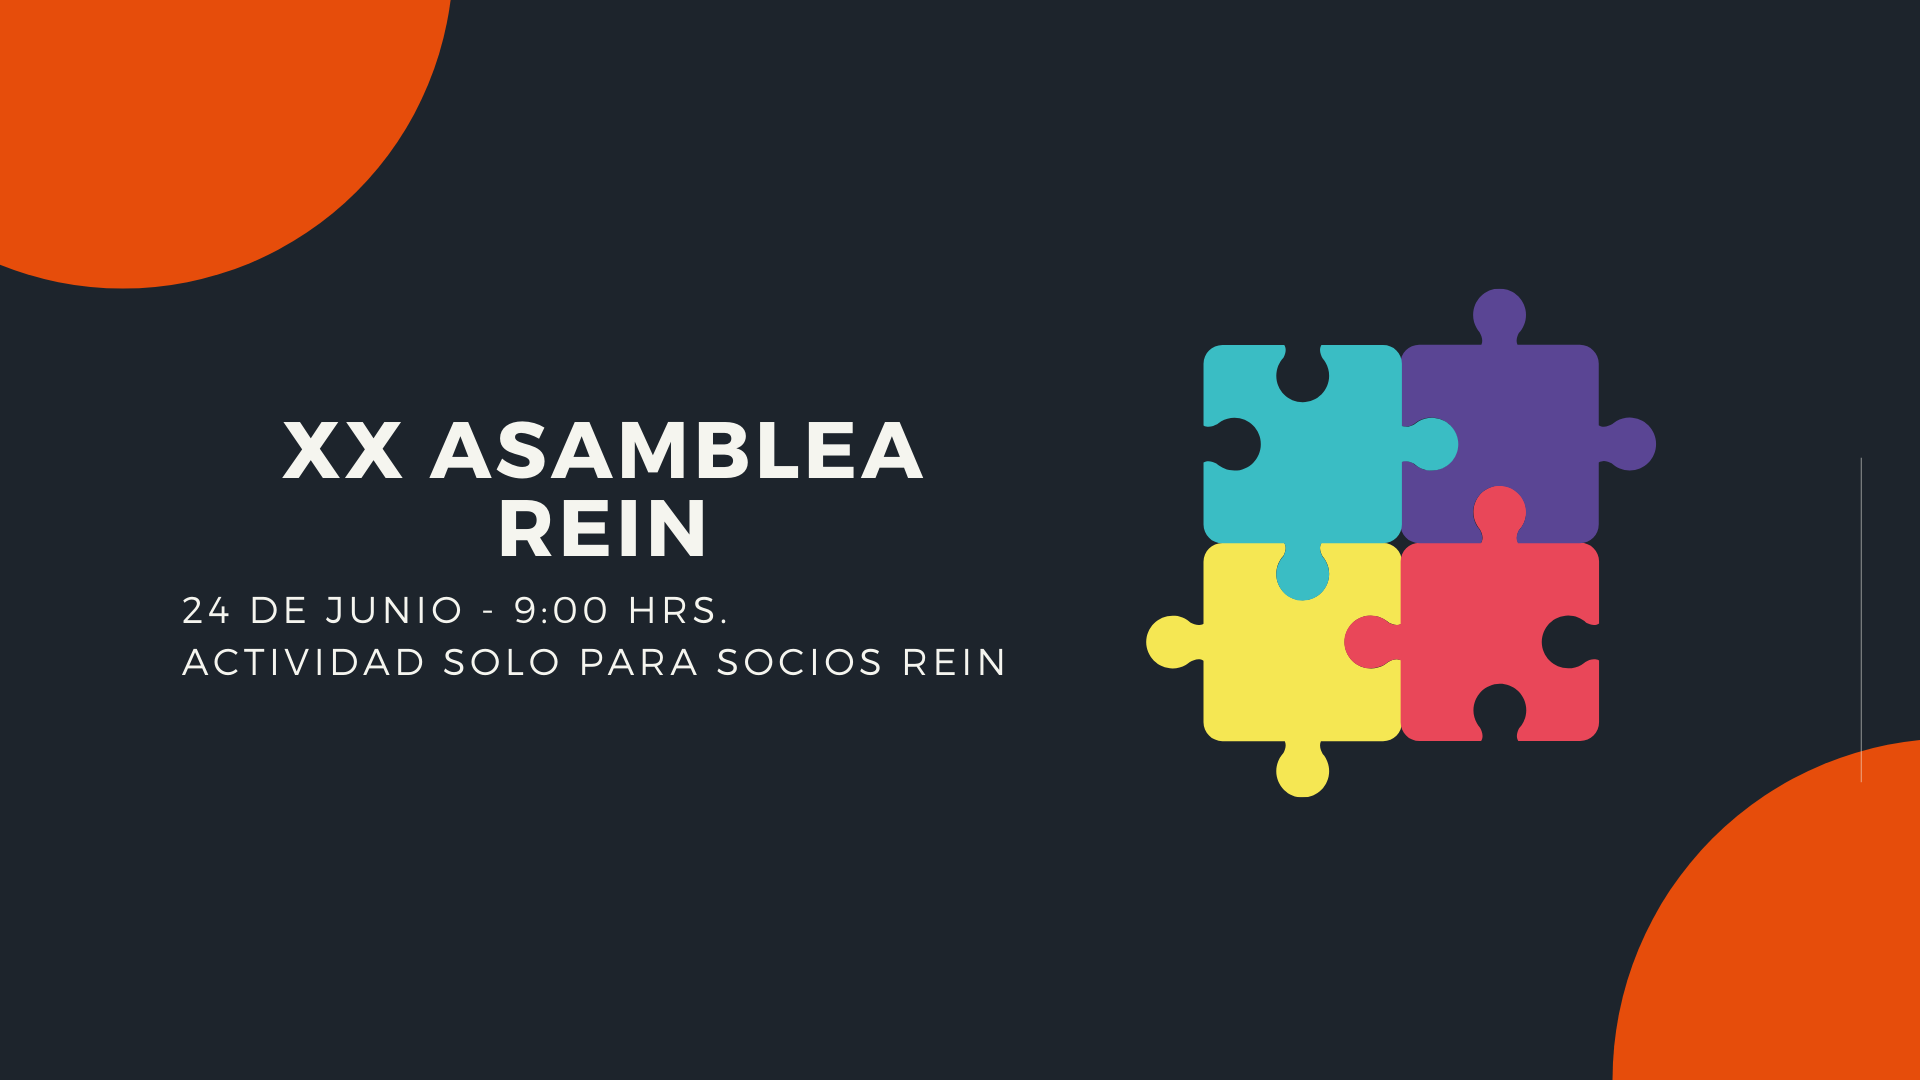 XX Asamblea de socios REIN - 9:00 hrs